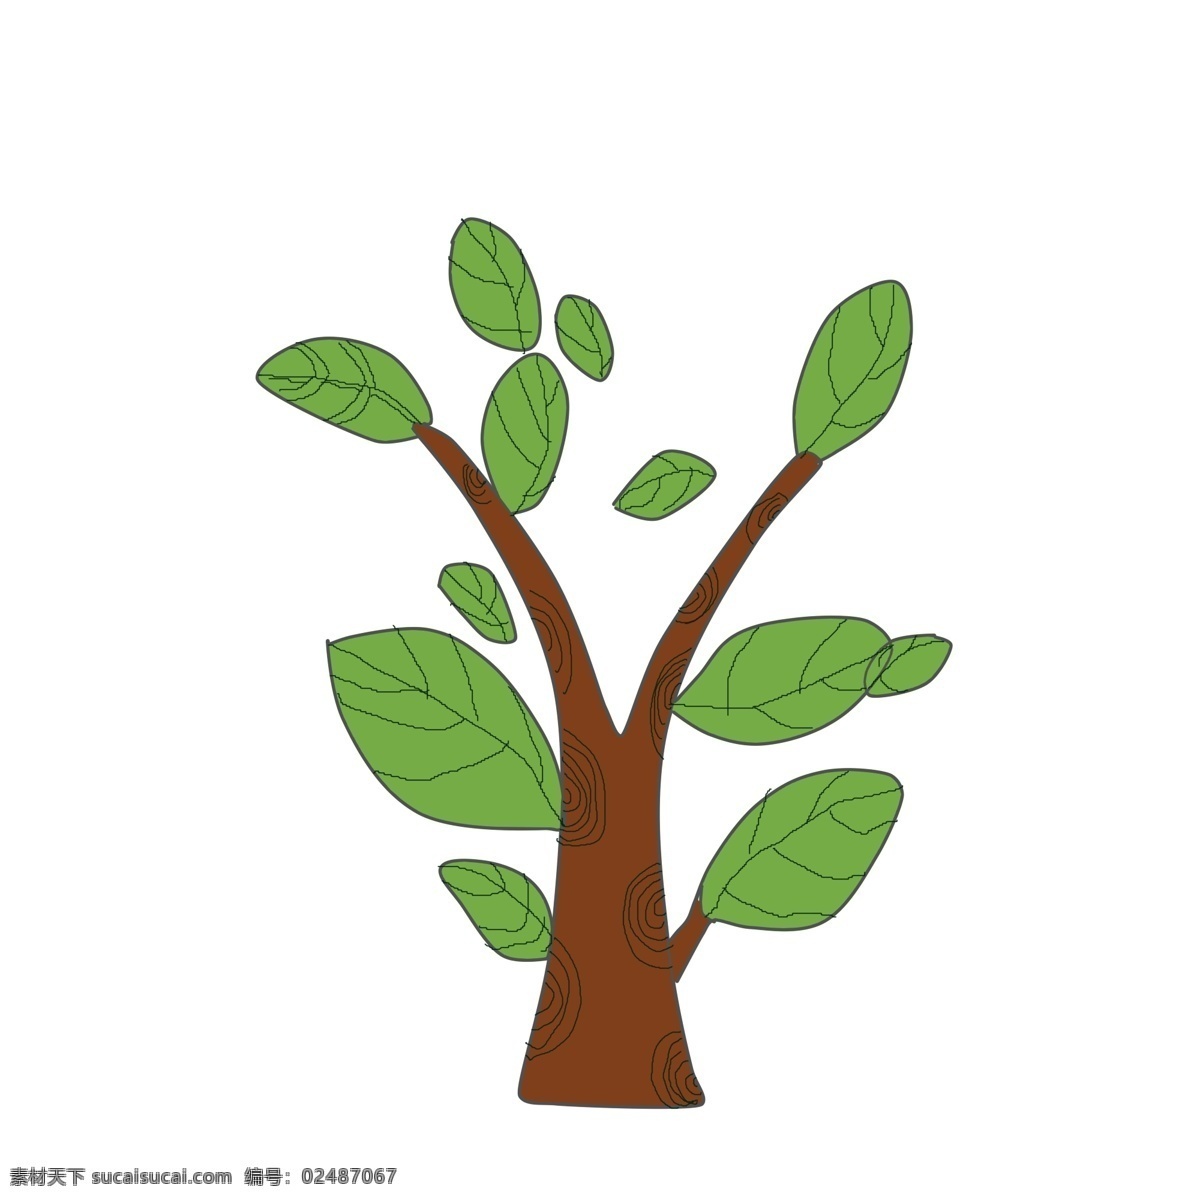 棵 绿色 树木 插画 一棵树 绿叶 叶子 绿色的树木 绿色卡通叶子 植物 树干 树叶 树枝